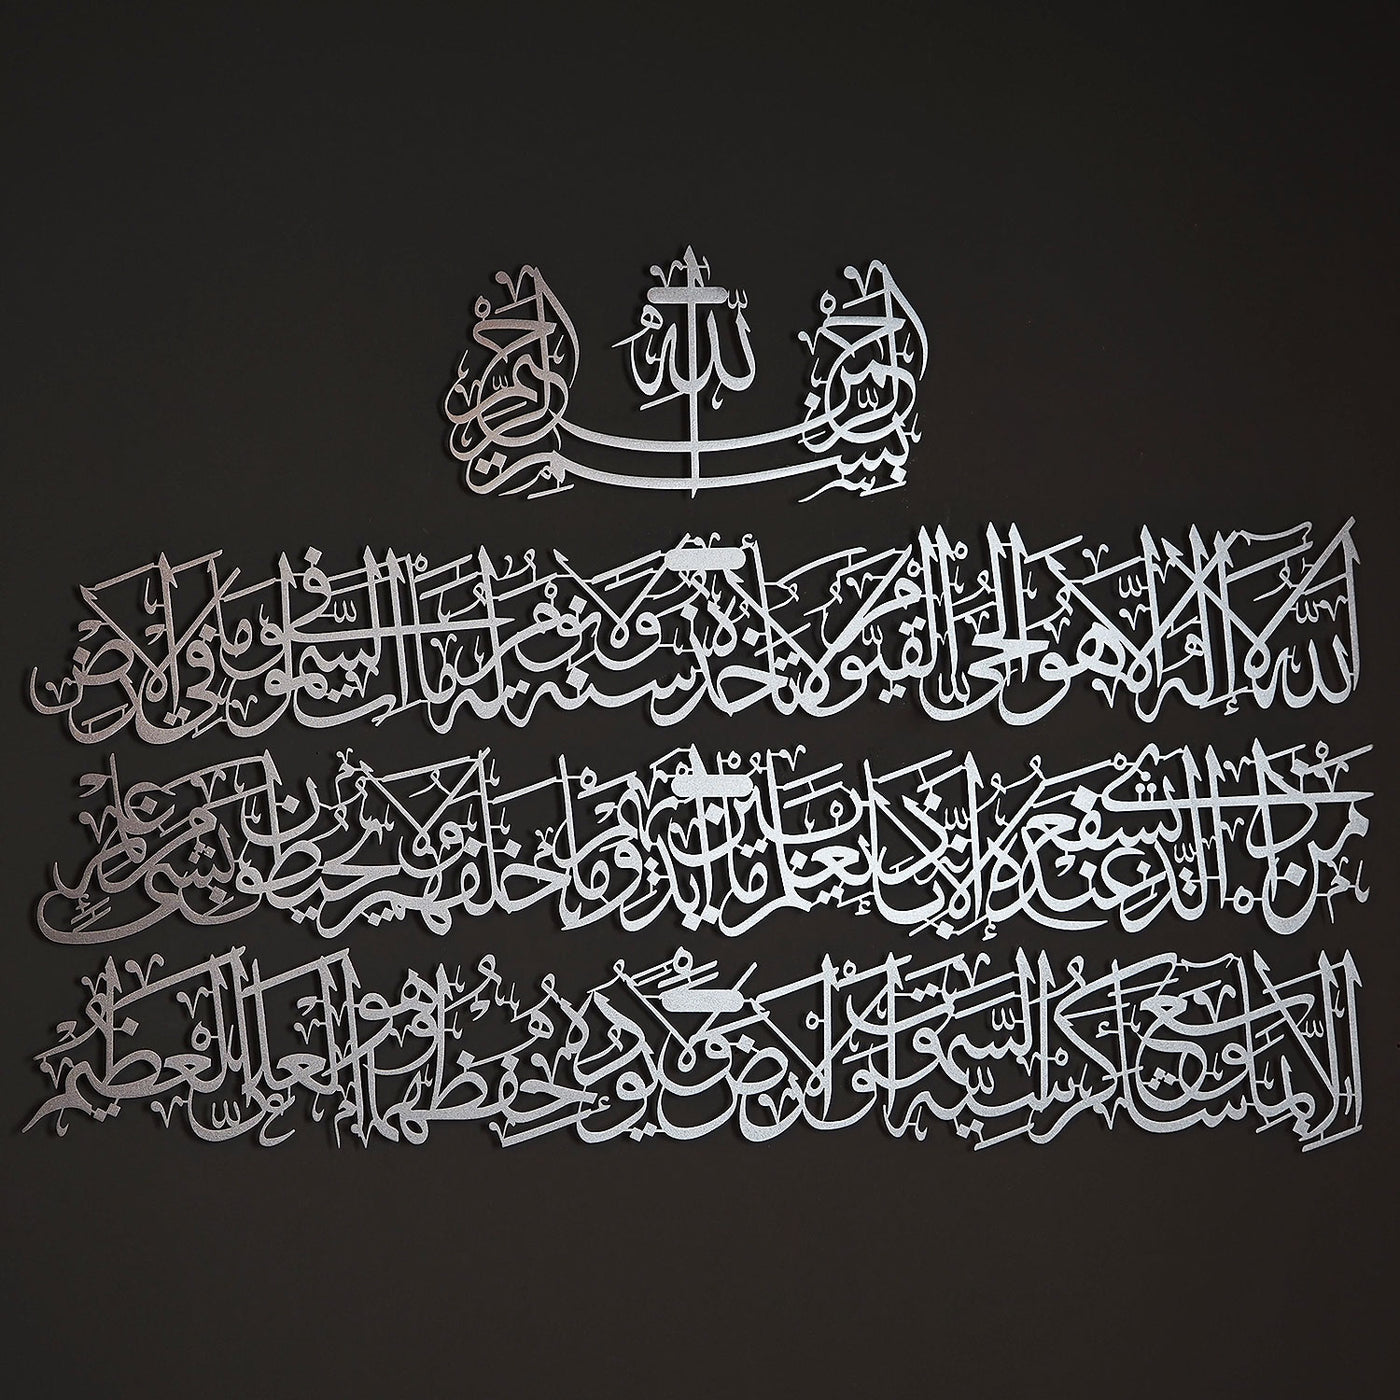 ayetel kürsi düz yazı islami koruyucu gümüş metal duvar tablosu